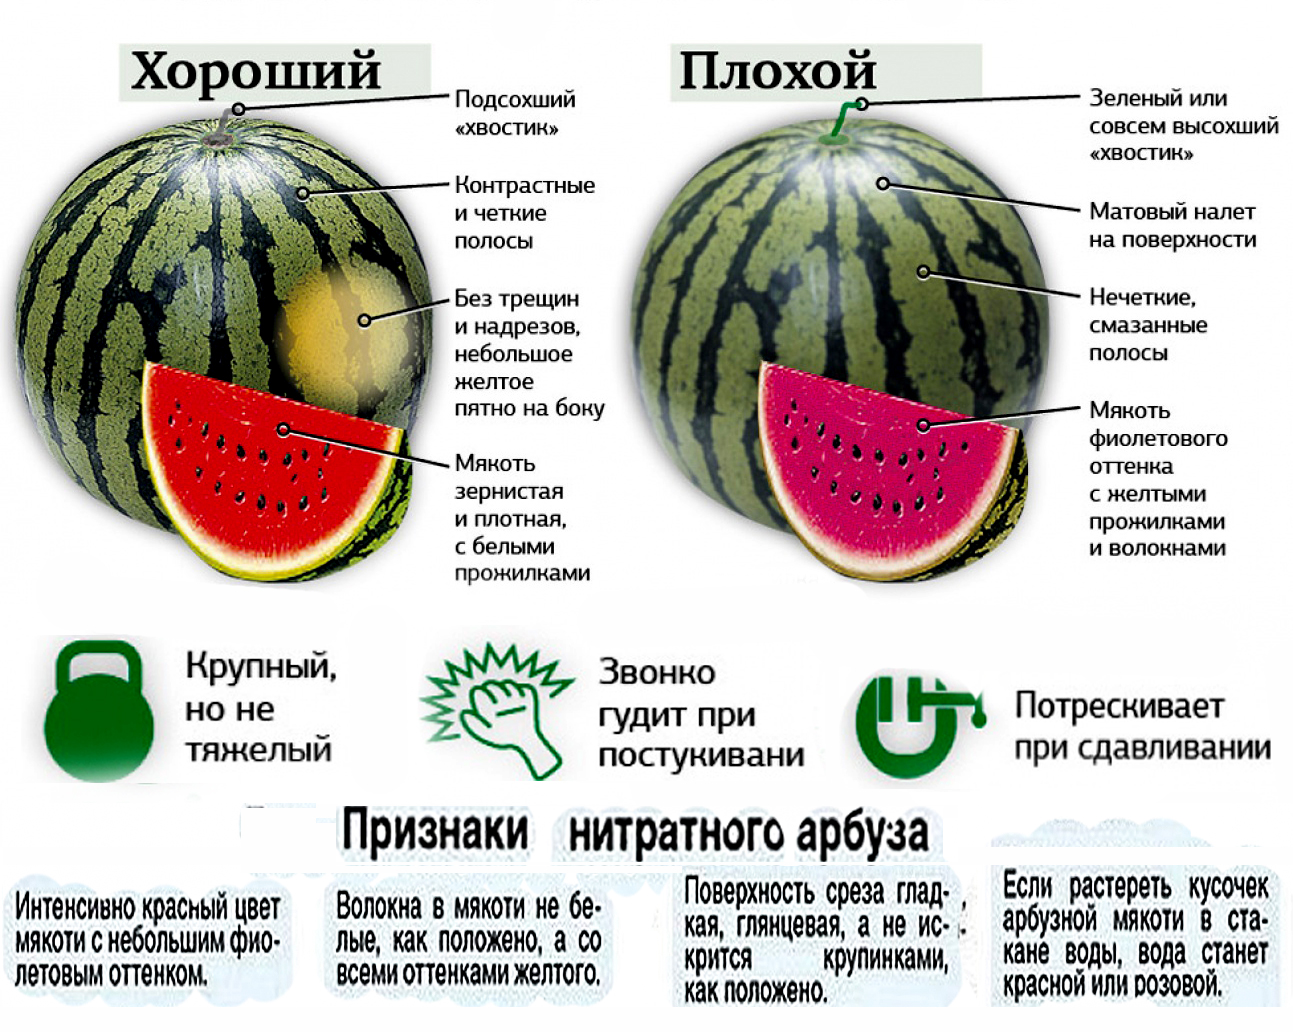 Астраханский арбуз: описание сорта, выращивание и хранение